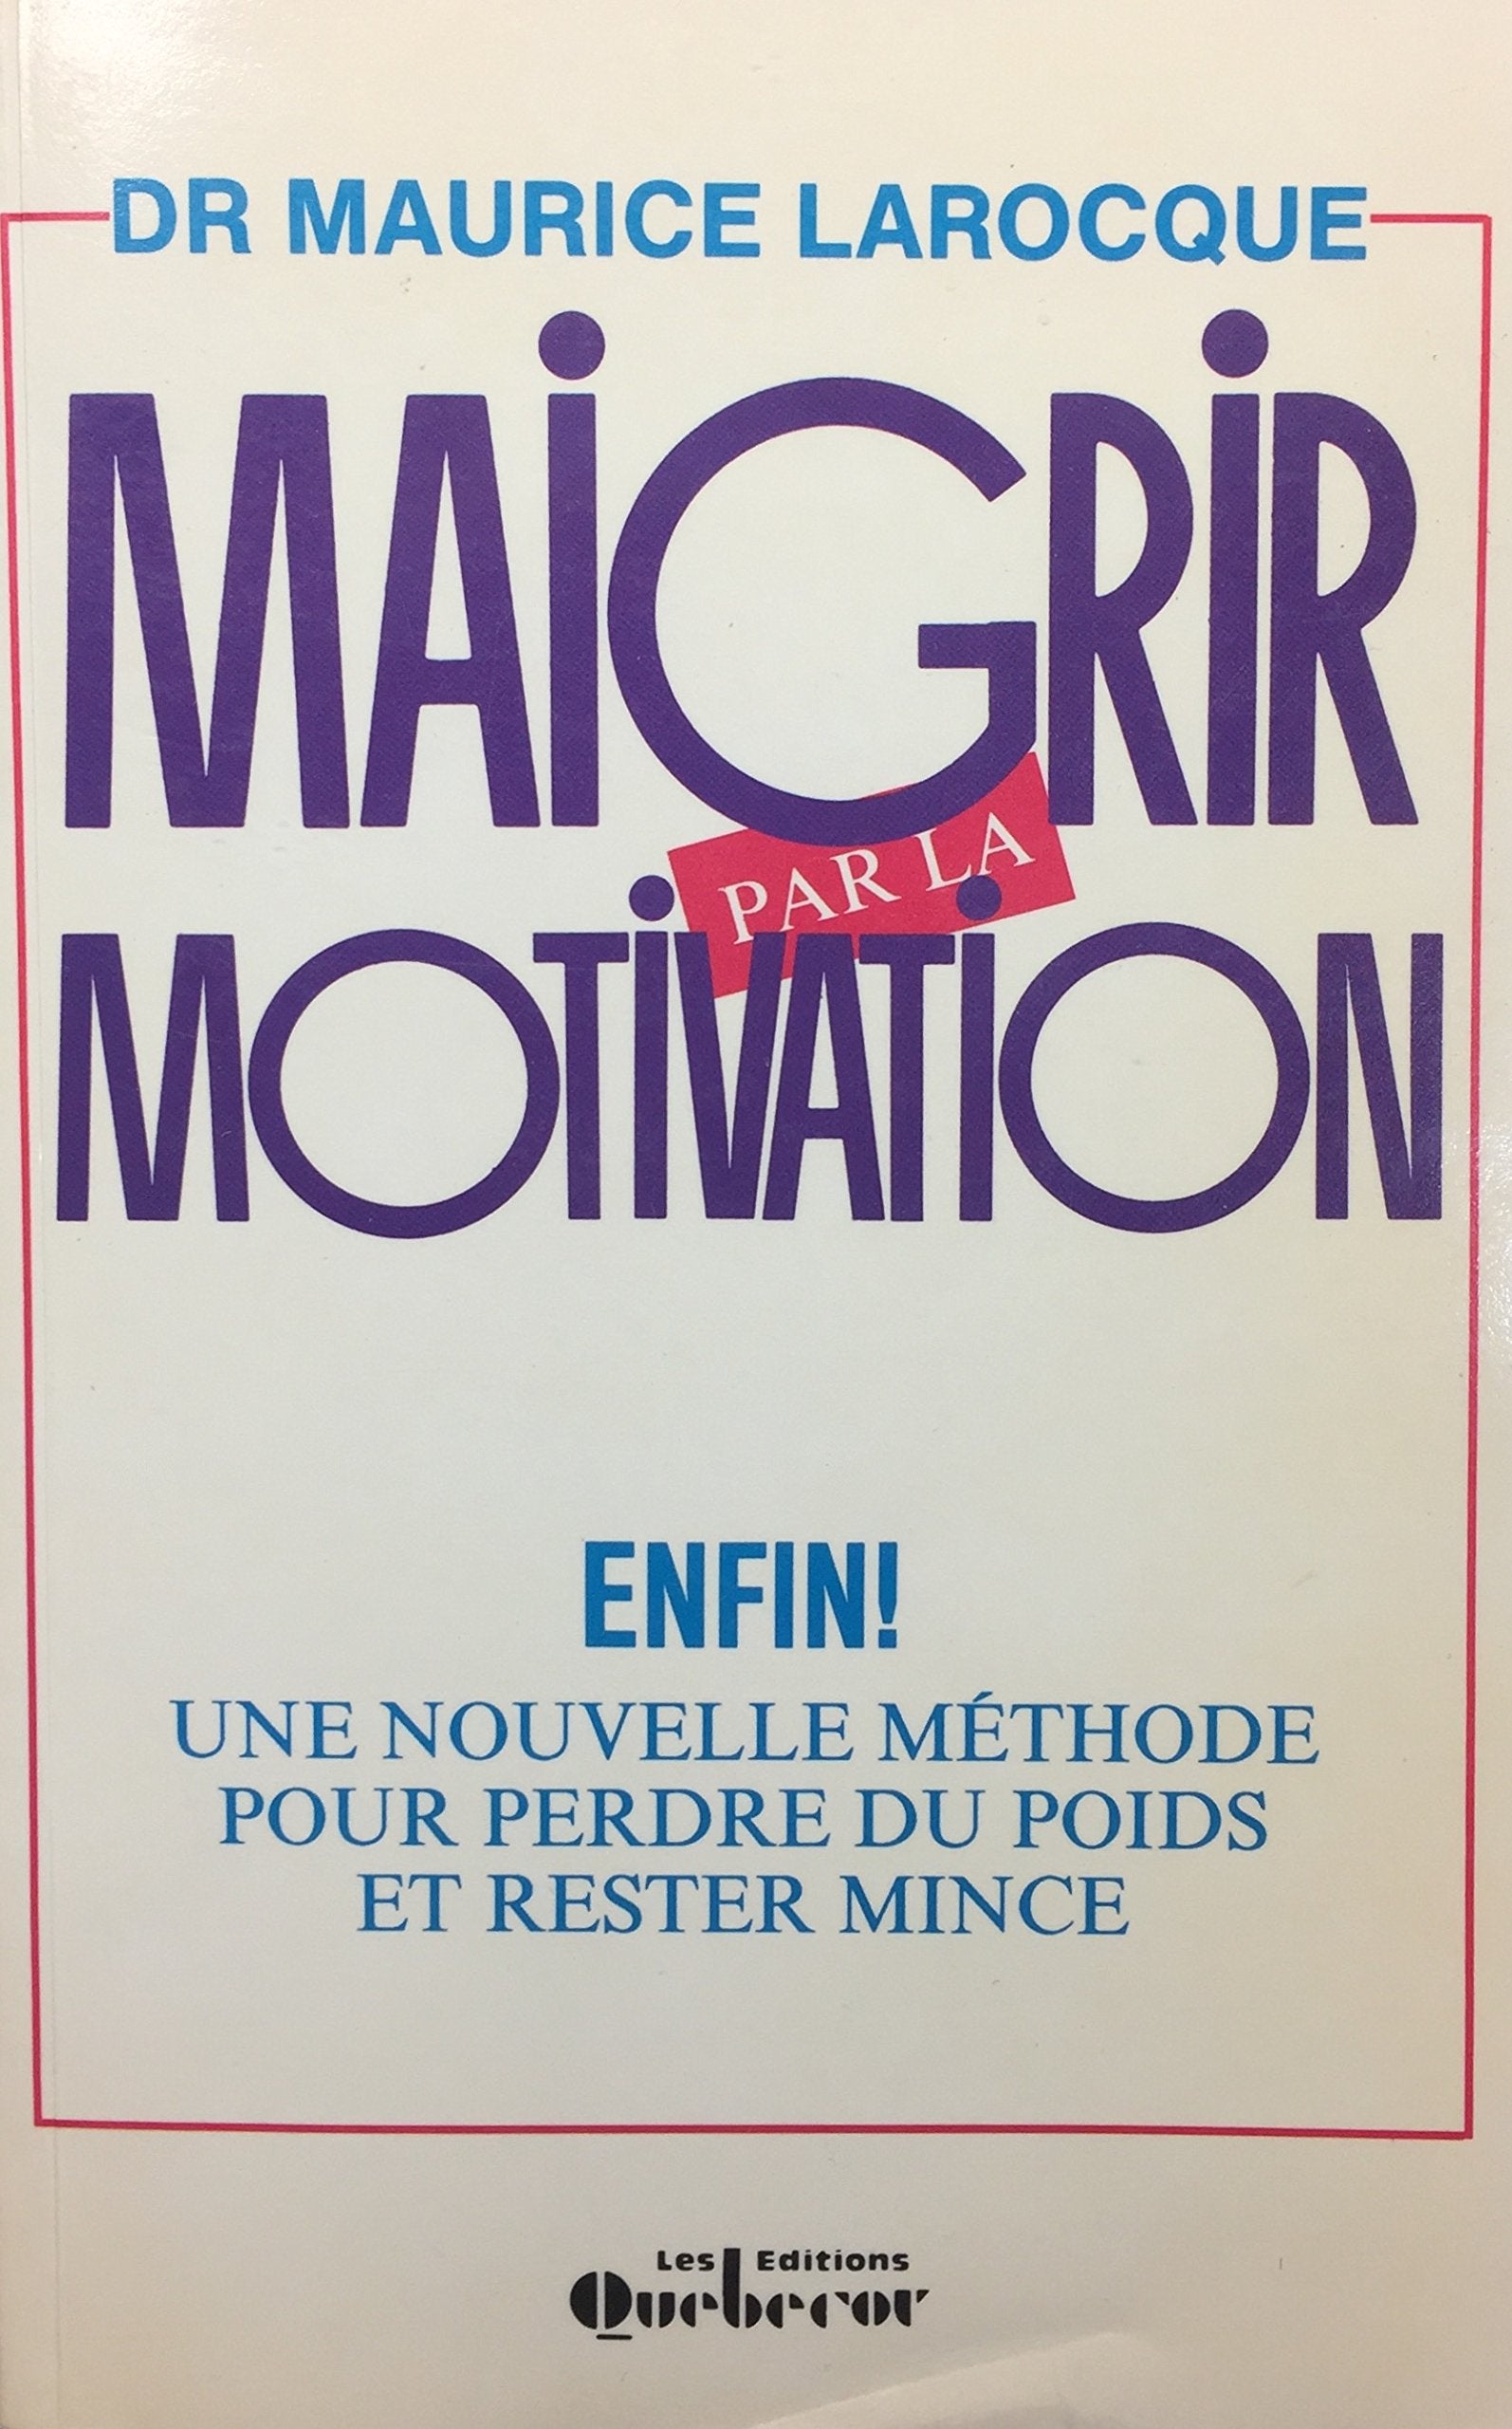 Maigrir par la motivation - Dr Maurice Larocque